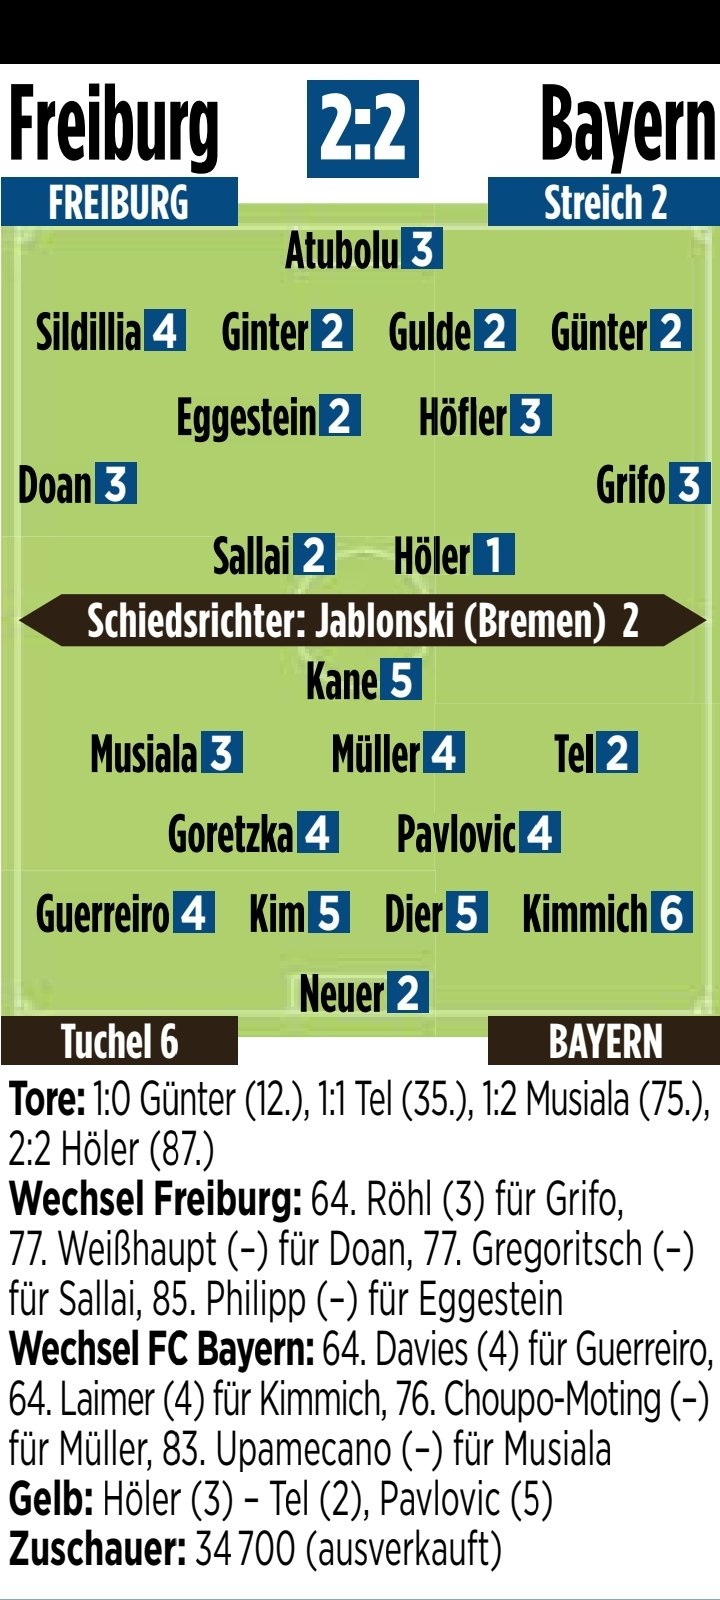 拜仁vs弗赖堡图片报评分：图赫尔、基米希最低，凯恩、戴尔低分